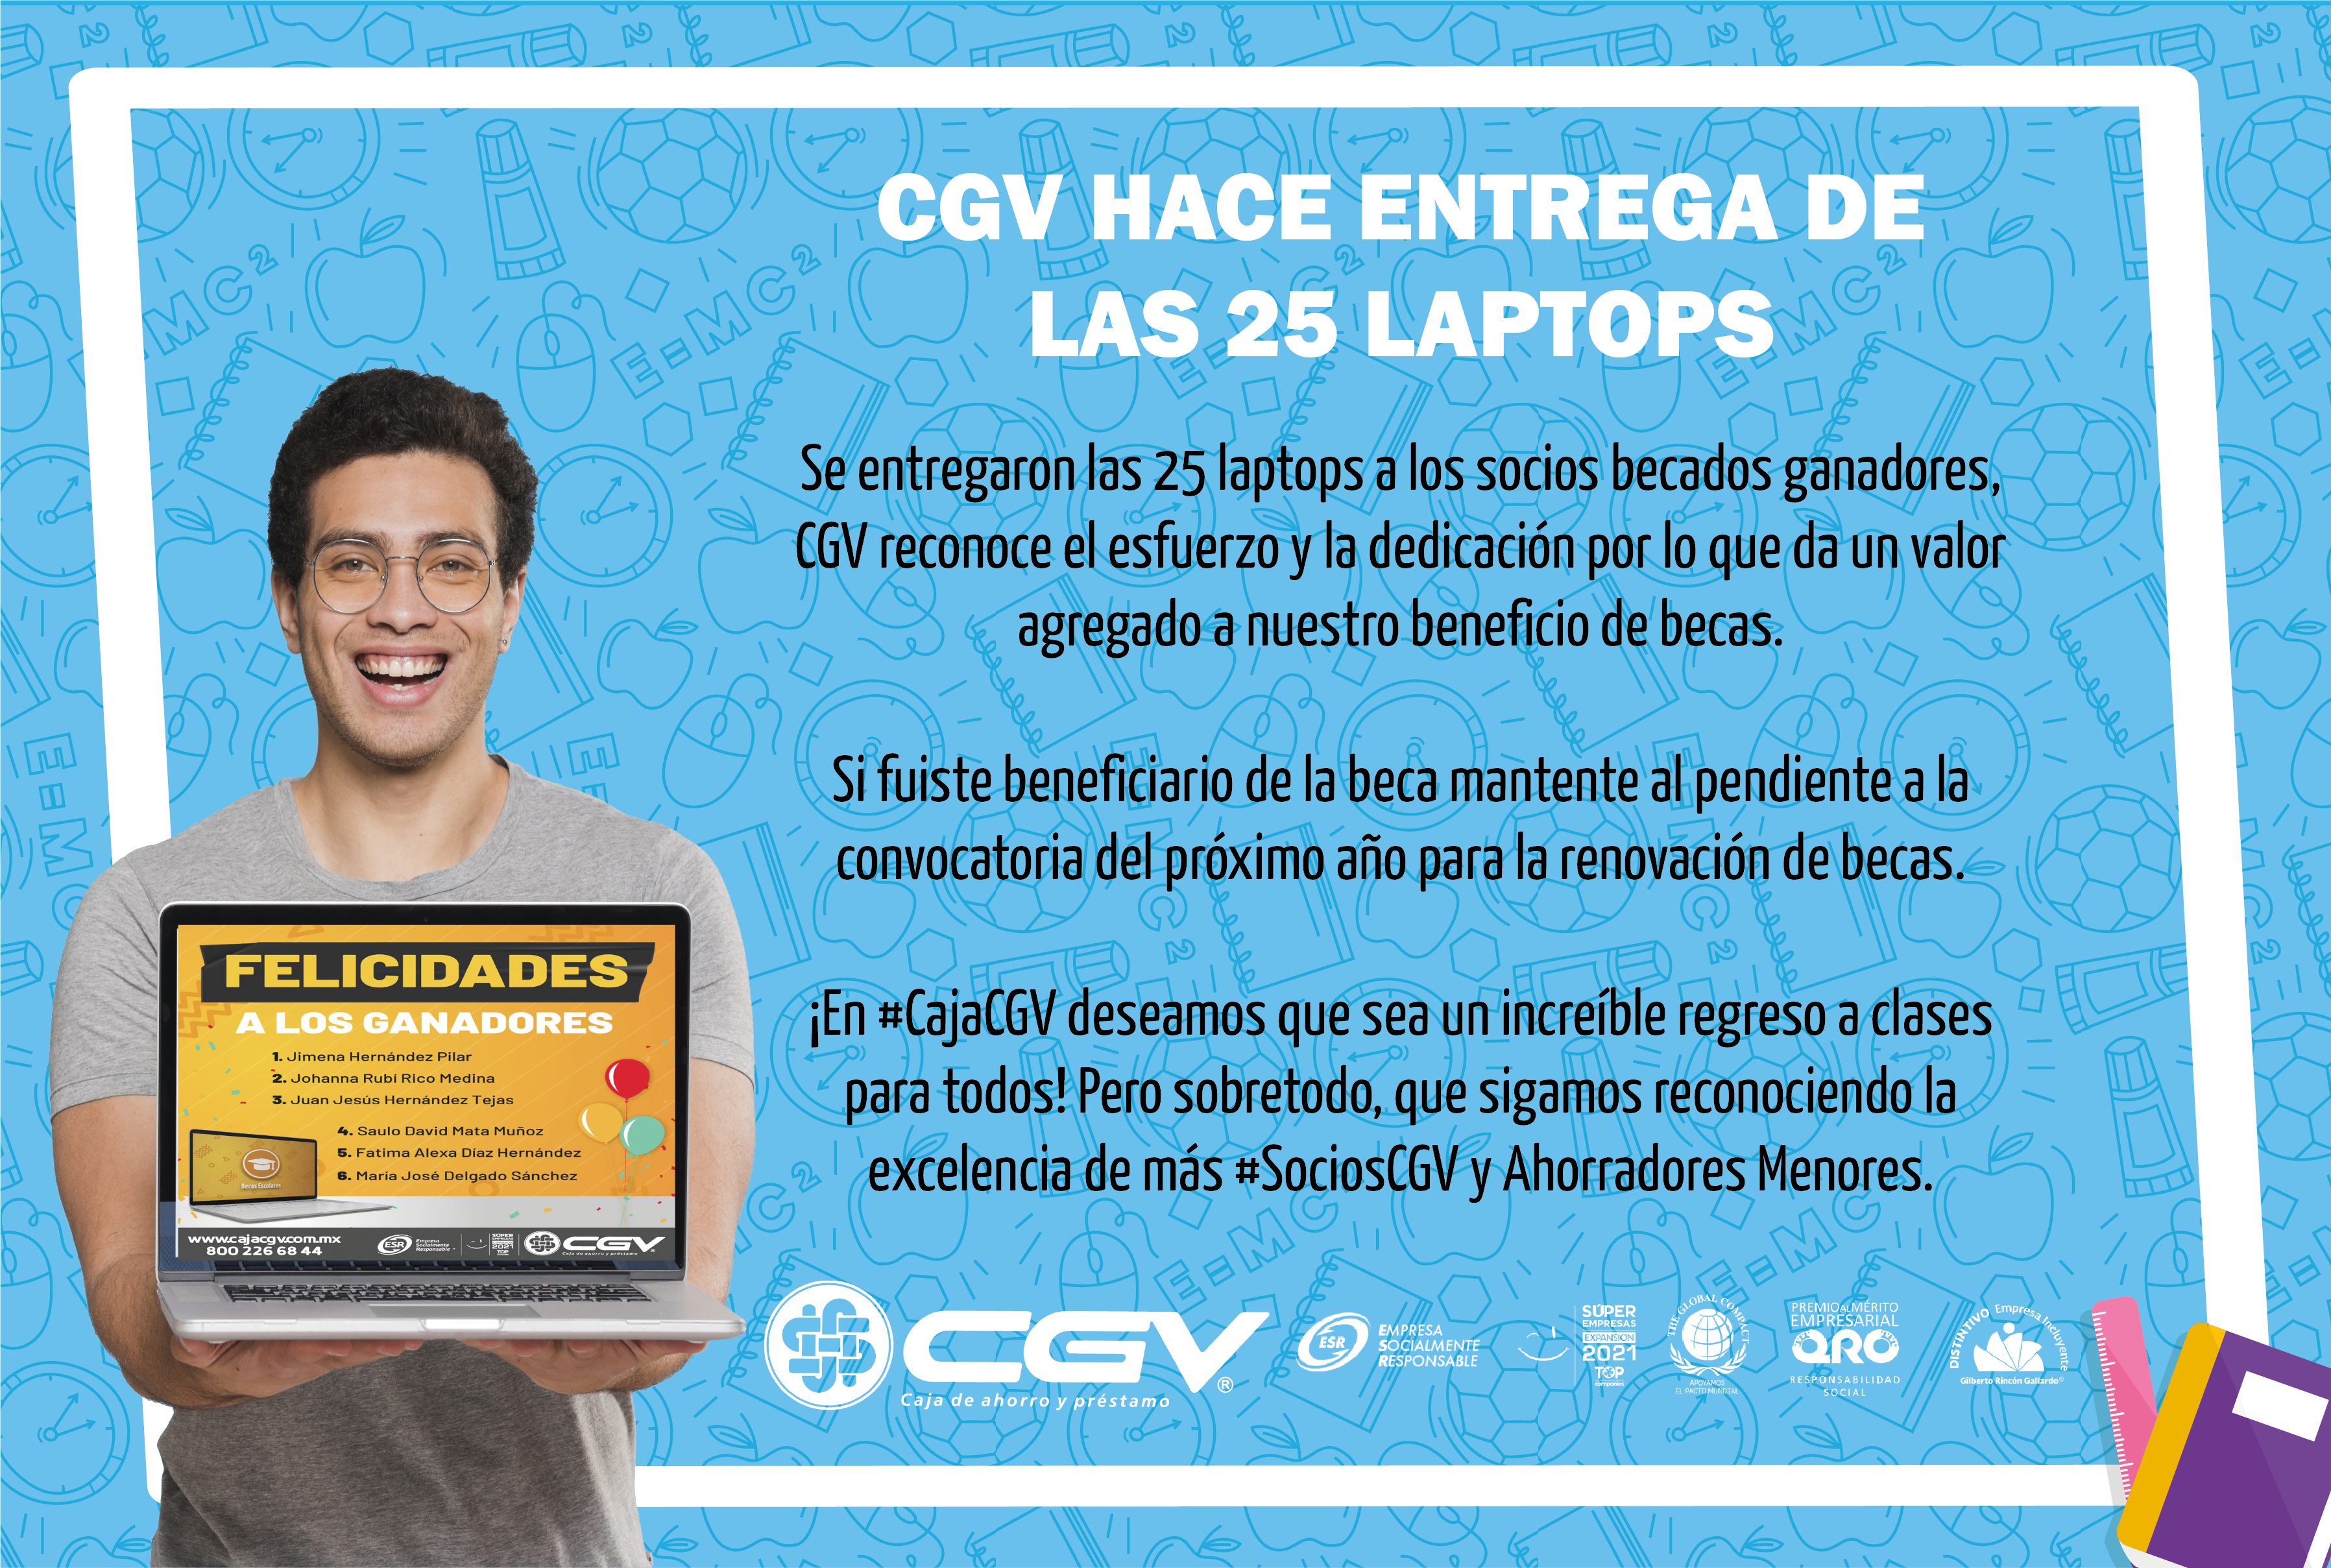 CGV hace entrega de 25 Laptops